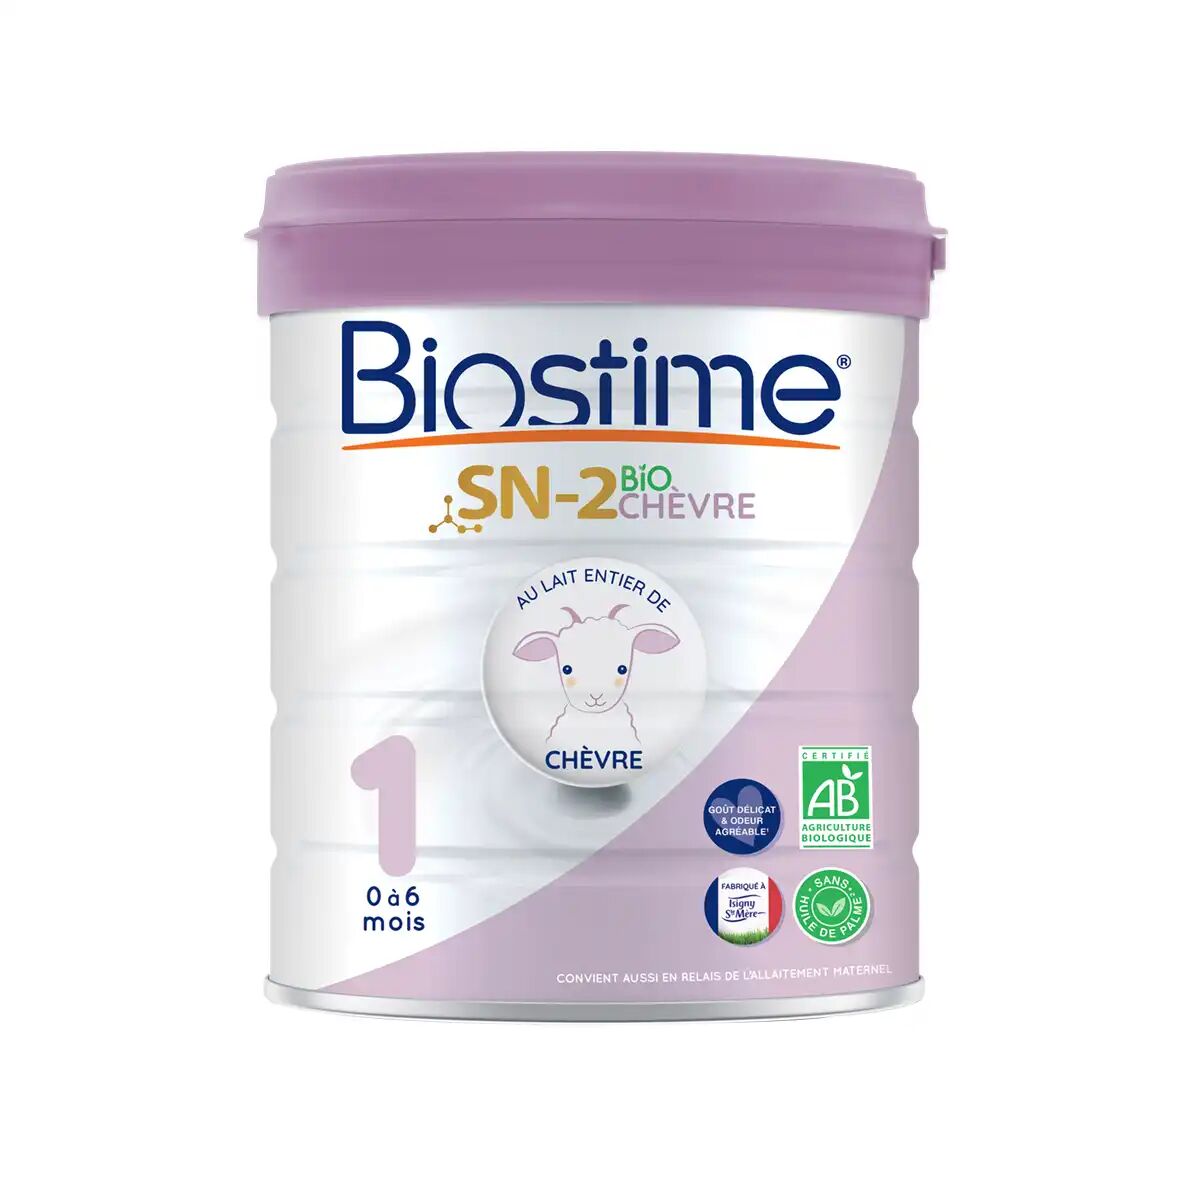 Biostime - Lait Entier De Chèvre 1er Age Bio, 800g - Alimentation Bio